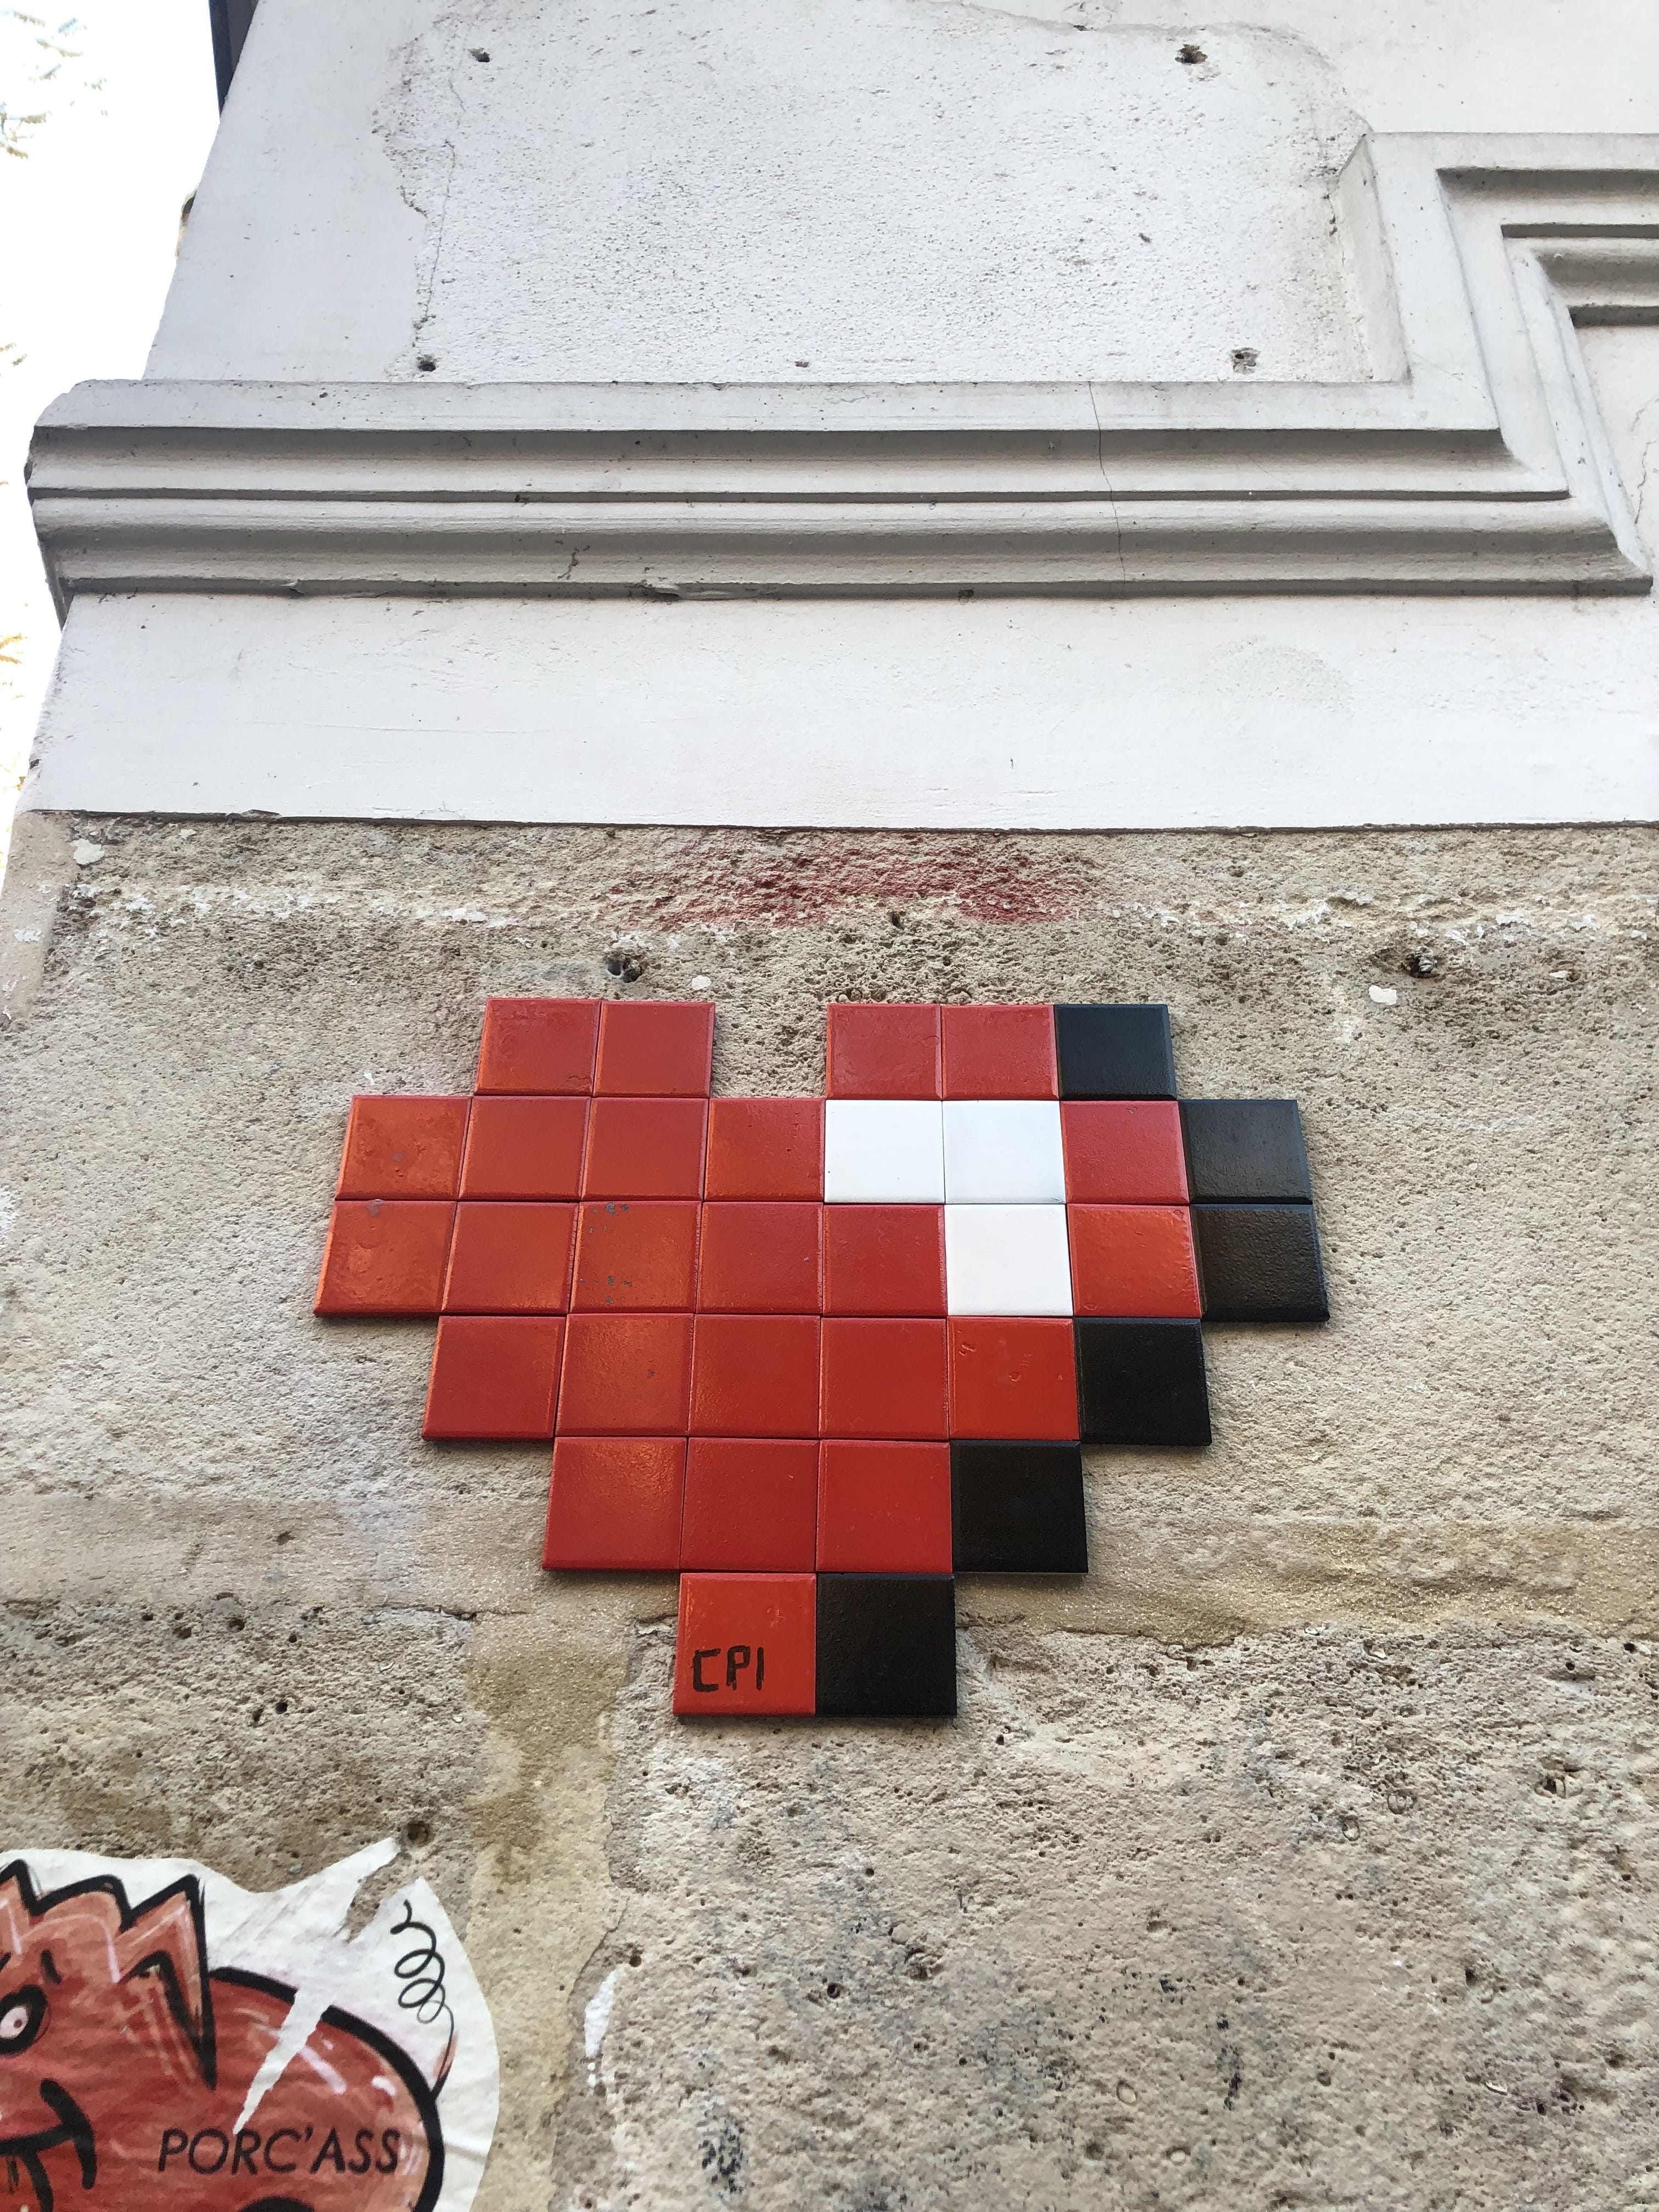 Mosaic 5446 Coeur pixel by the artist Coeur pixel in Paris France